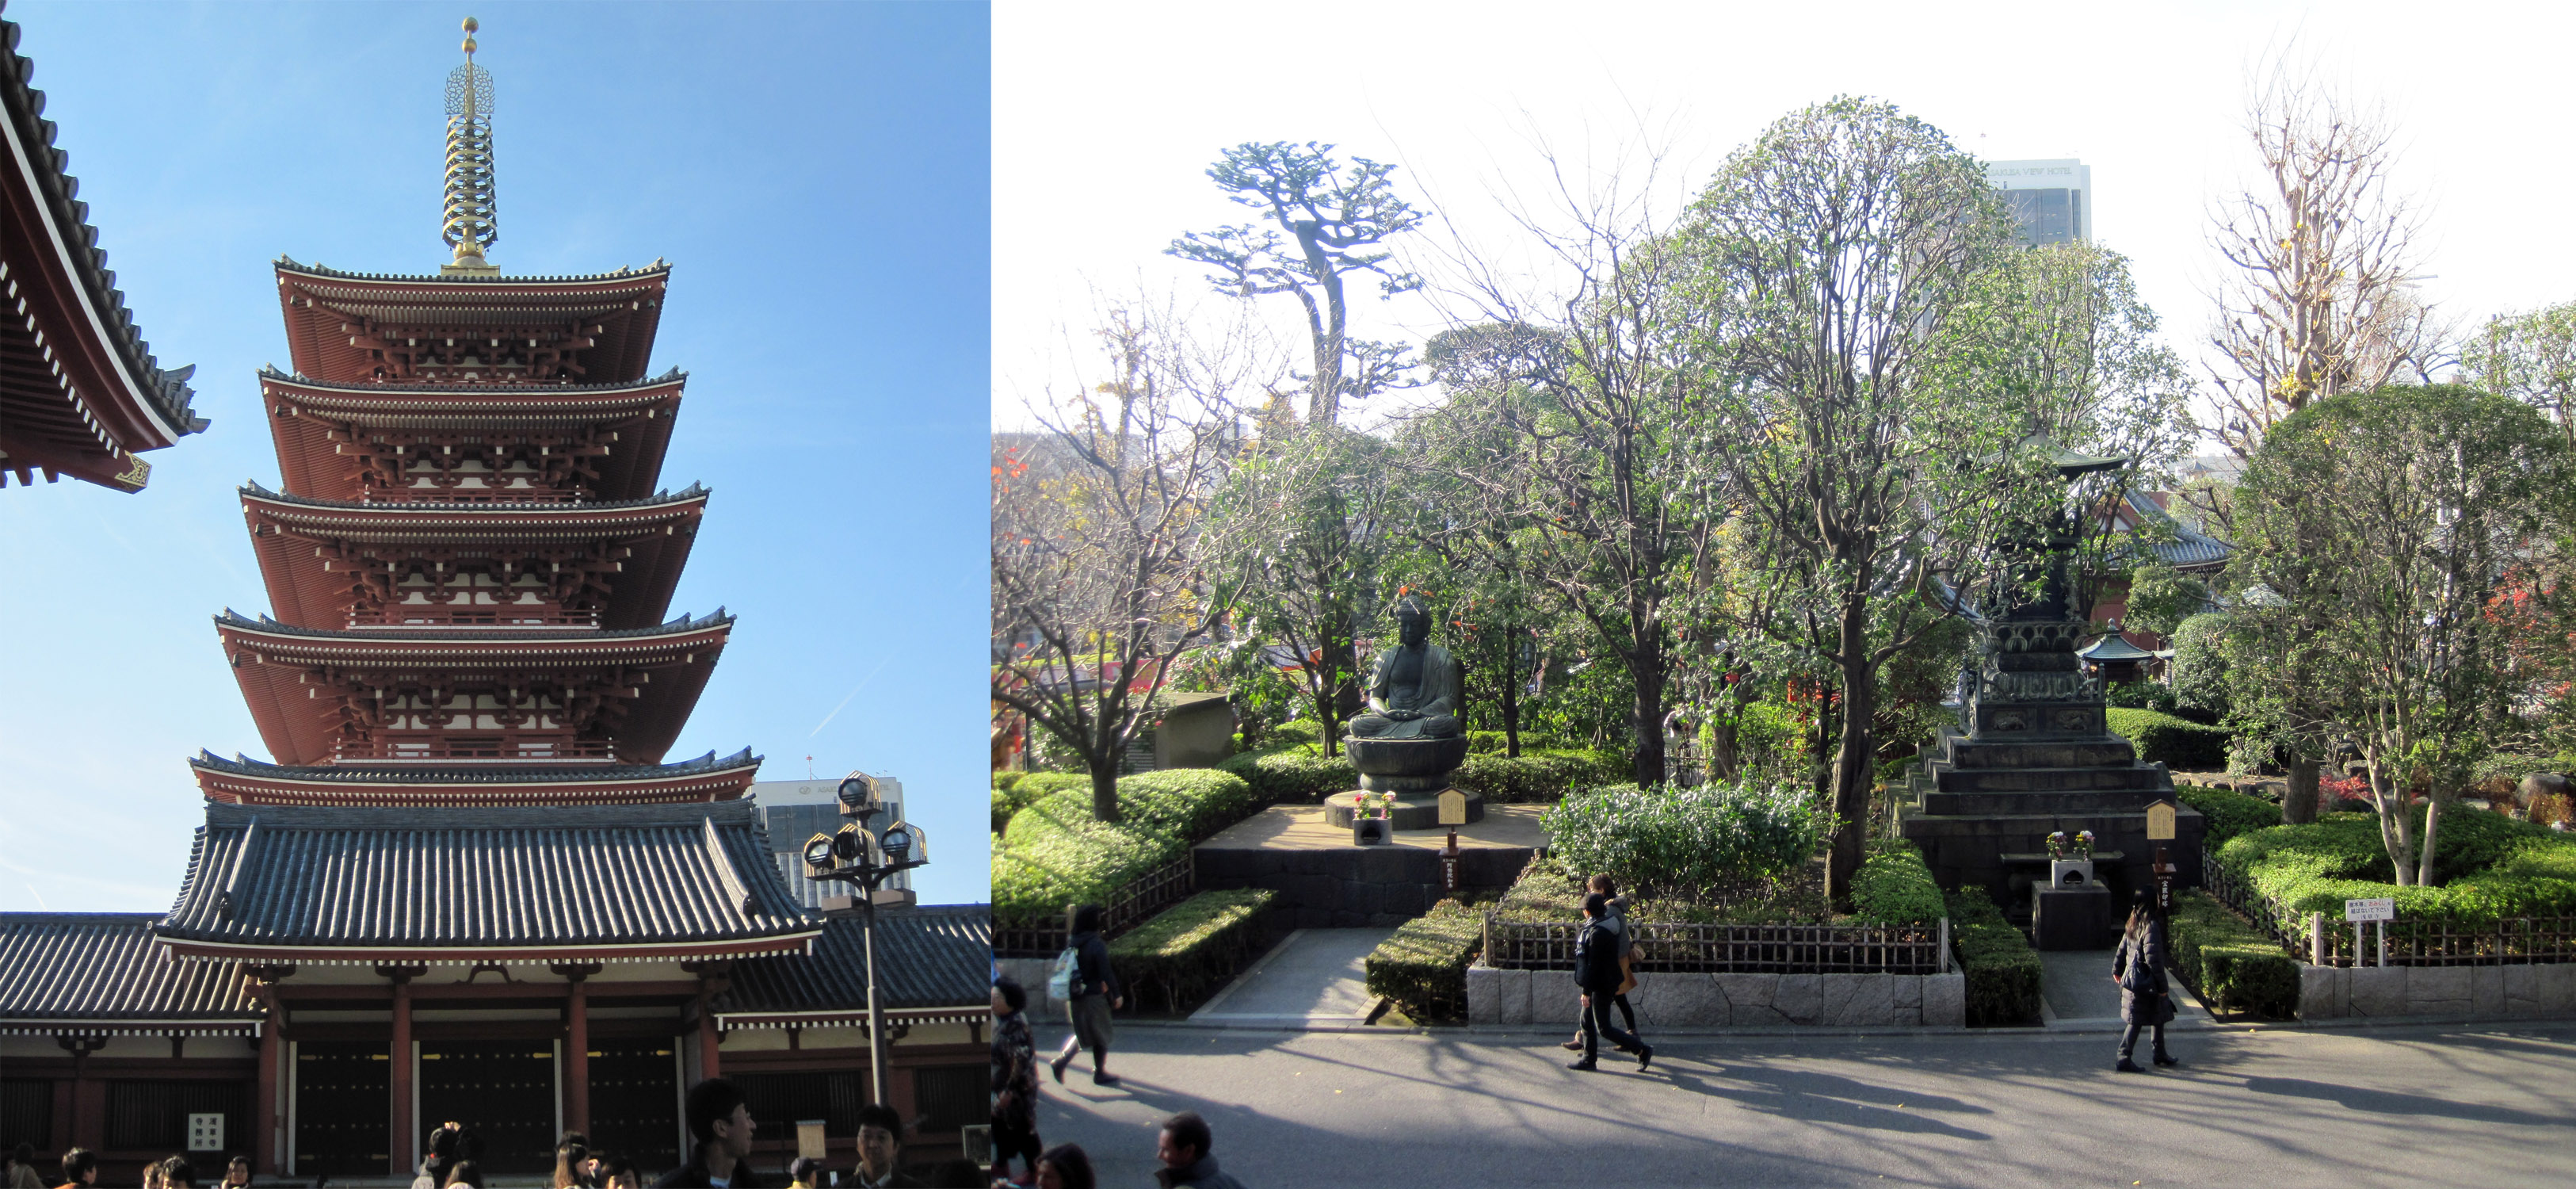 Pagoda y jardines del templo Senso-ji